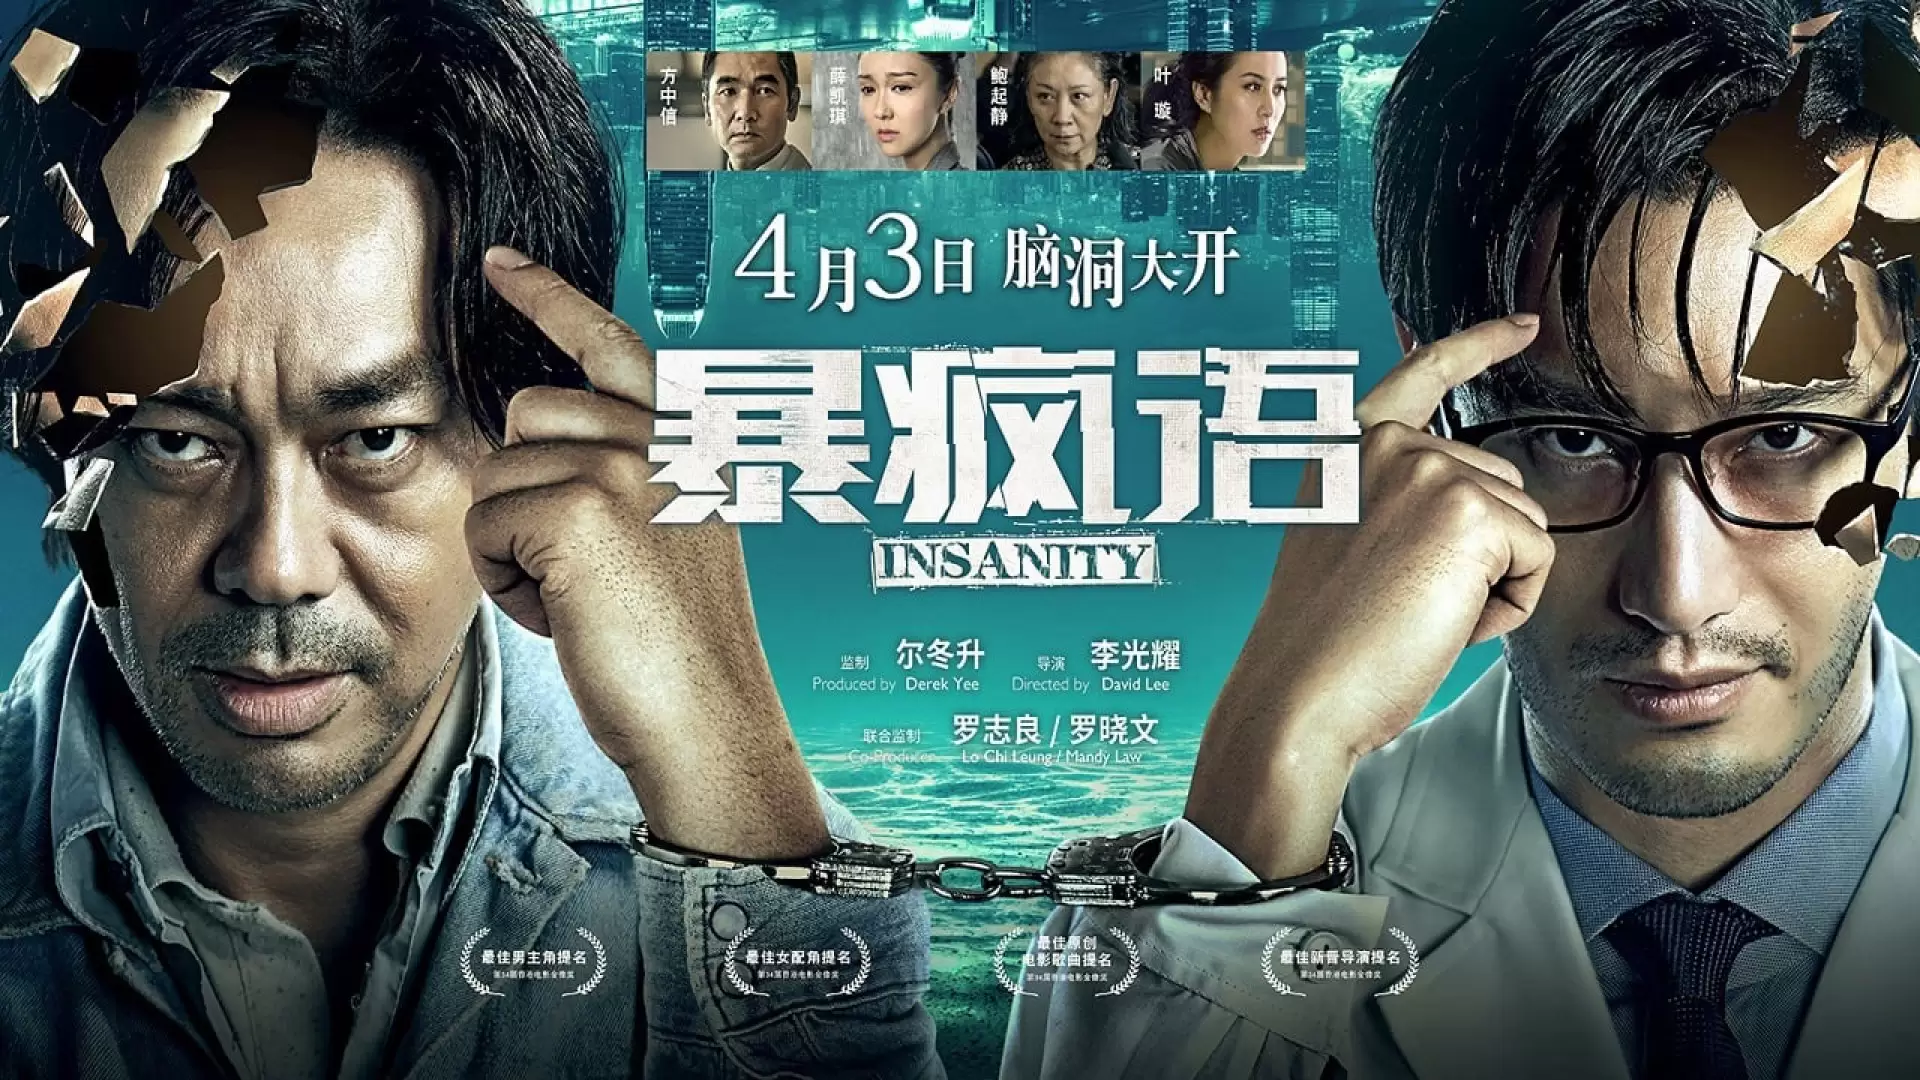 دانلود فیلم Insanity 2014